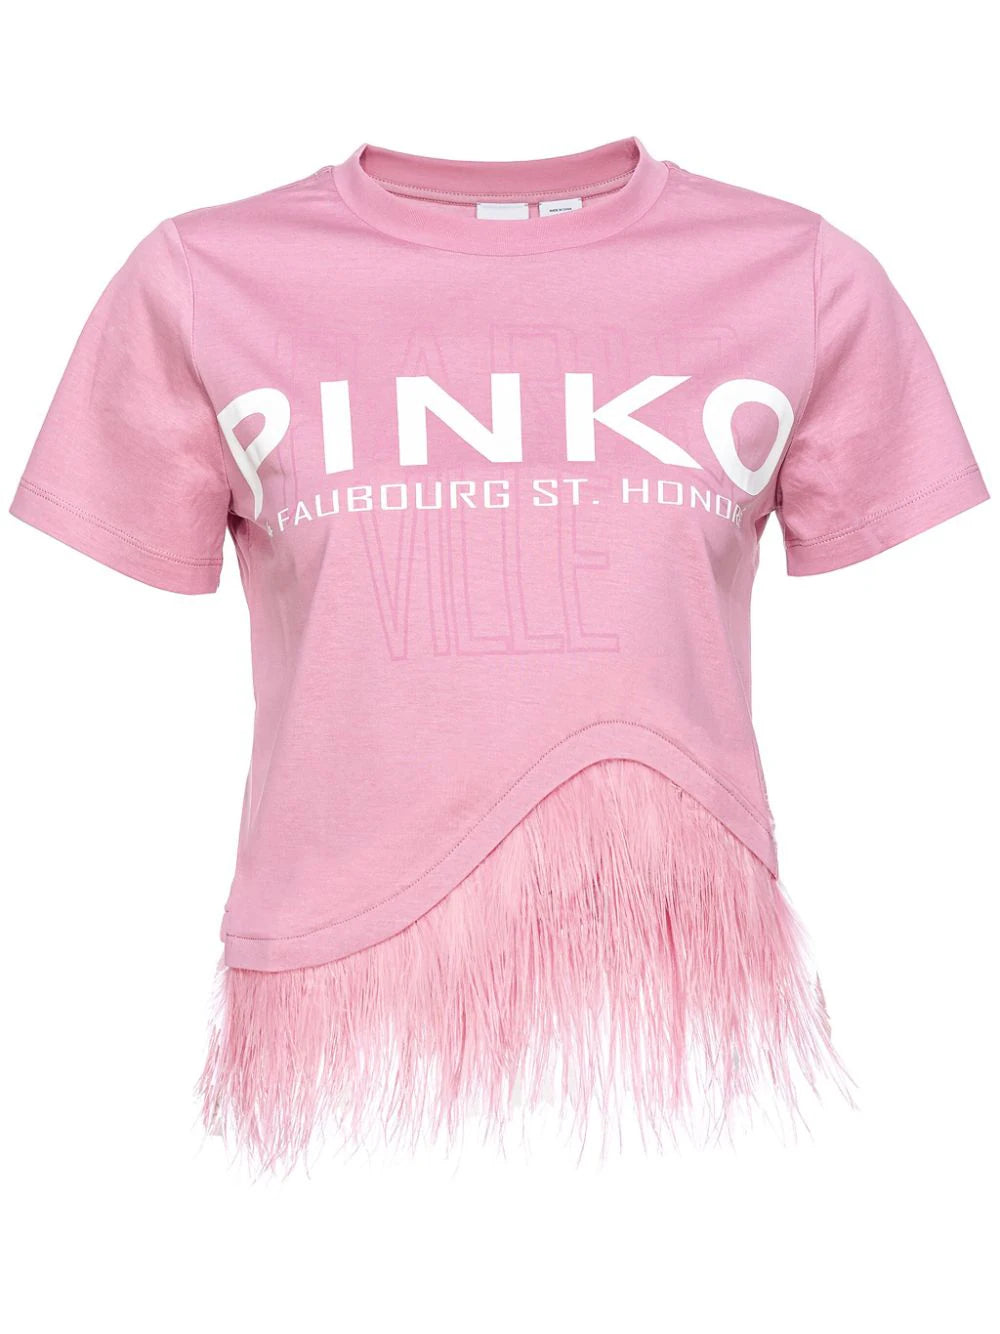 Pinko 103130 Woman Pink T-shirts and Polos - Zuklat